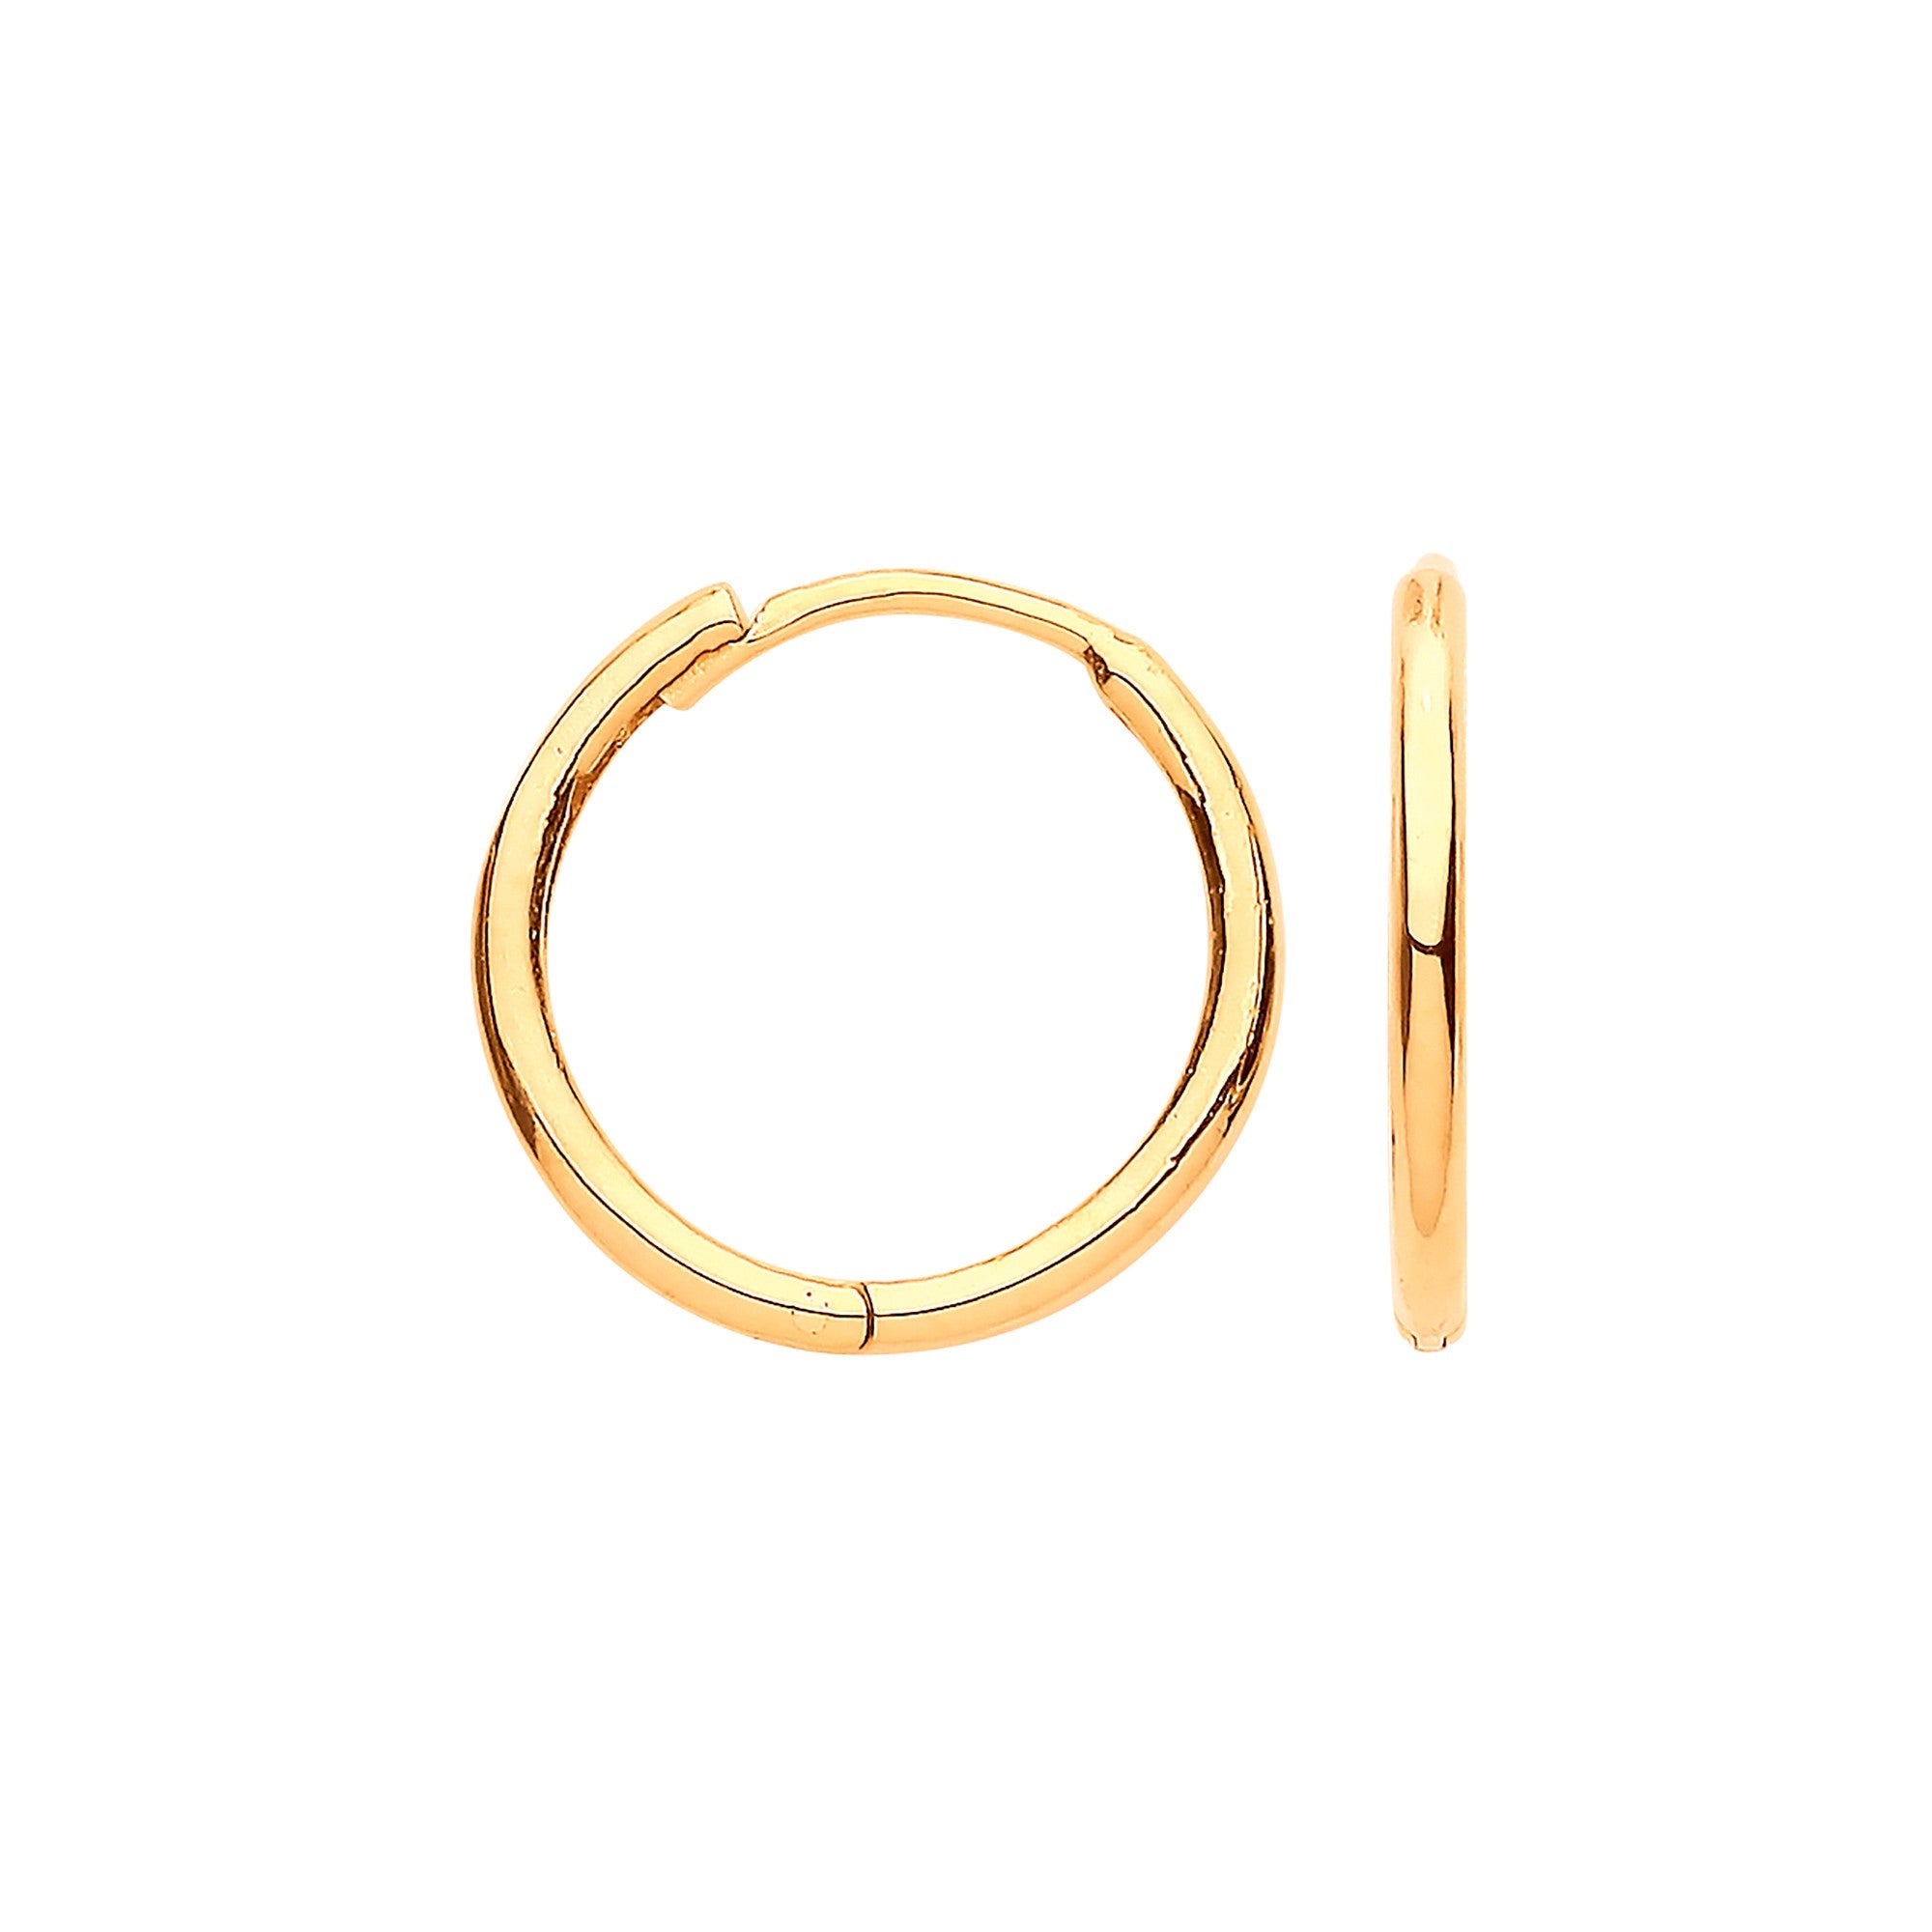 9ct Gold Hoop Earrings Plain Hinged Huggies (14mm) - Robert Anthony Jewellers, Edinburgh